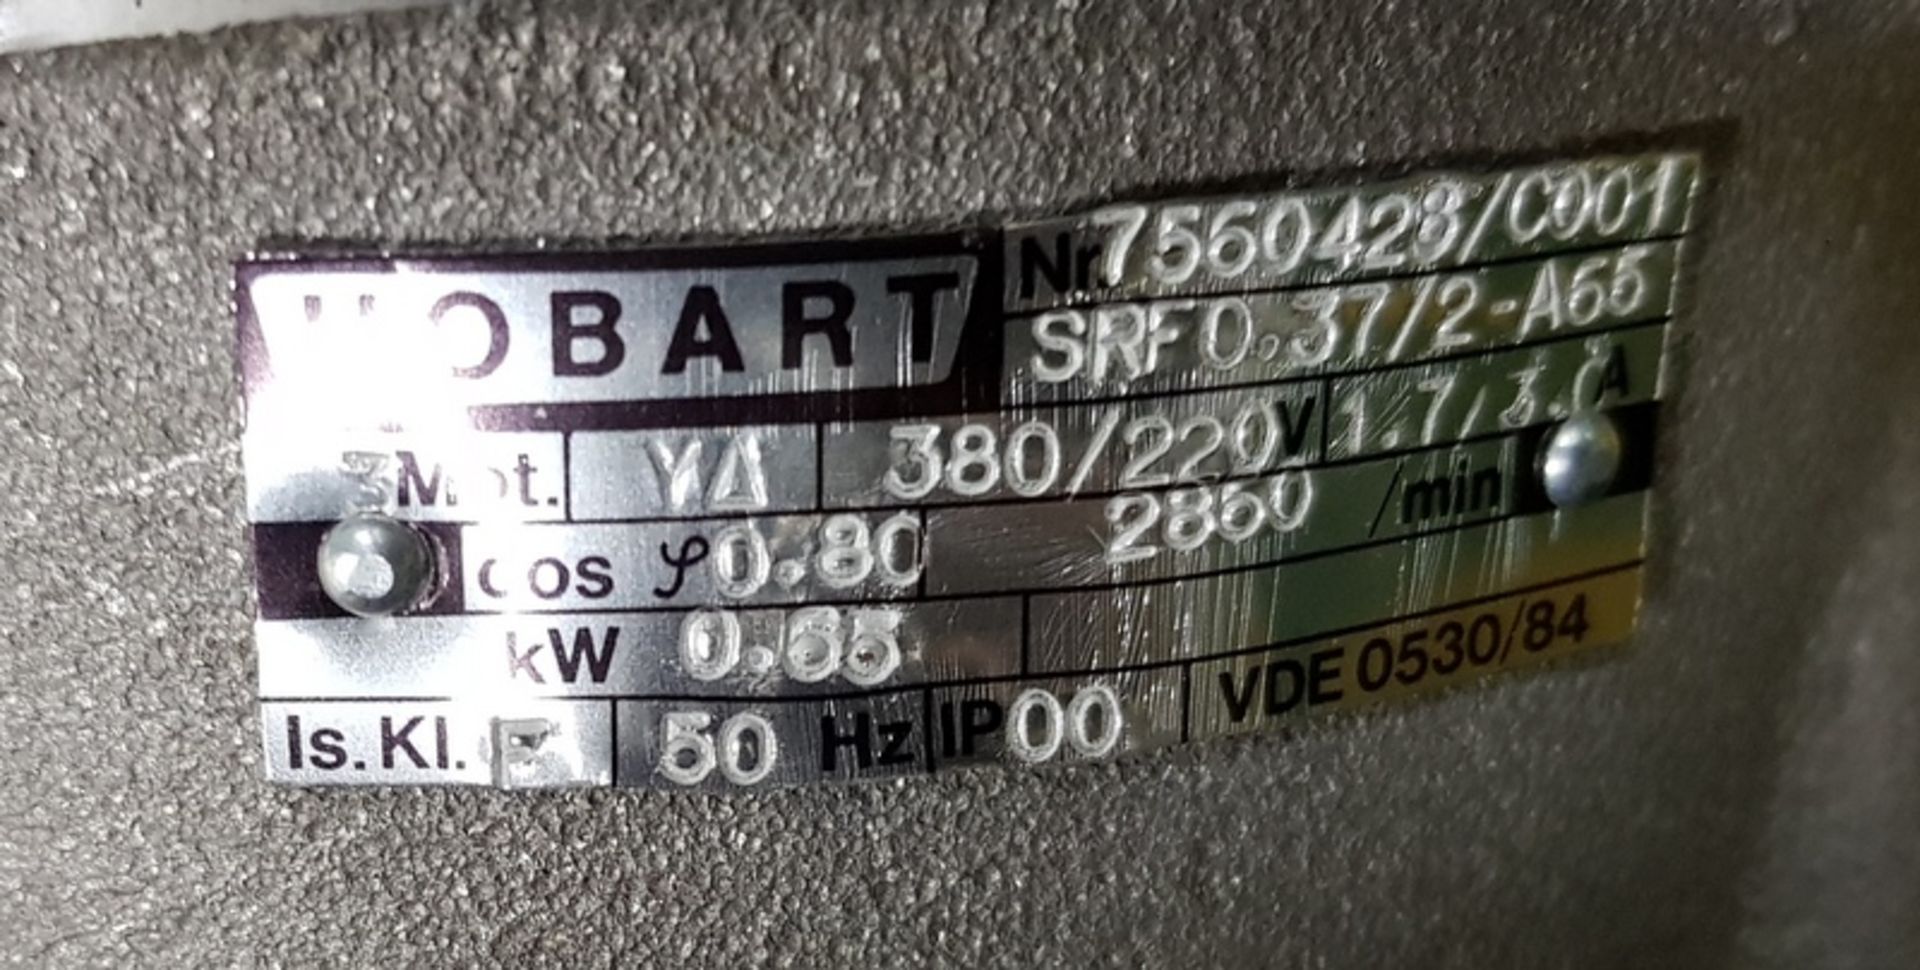 Hobart 226776-5-Pump - Bild 3 aus 3